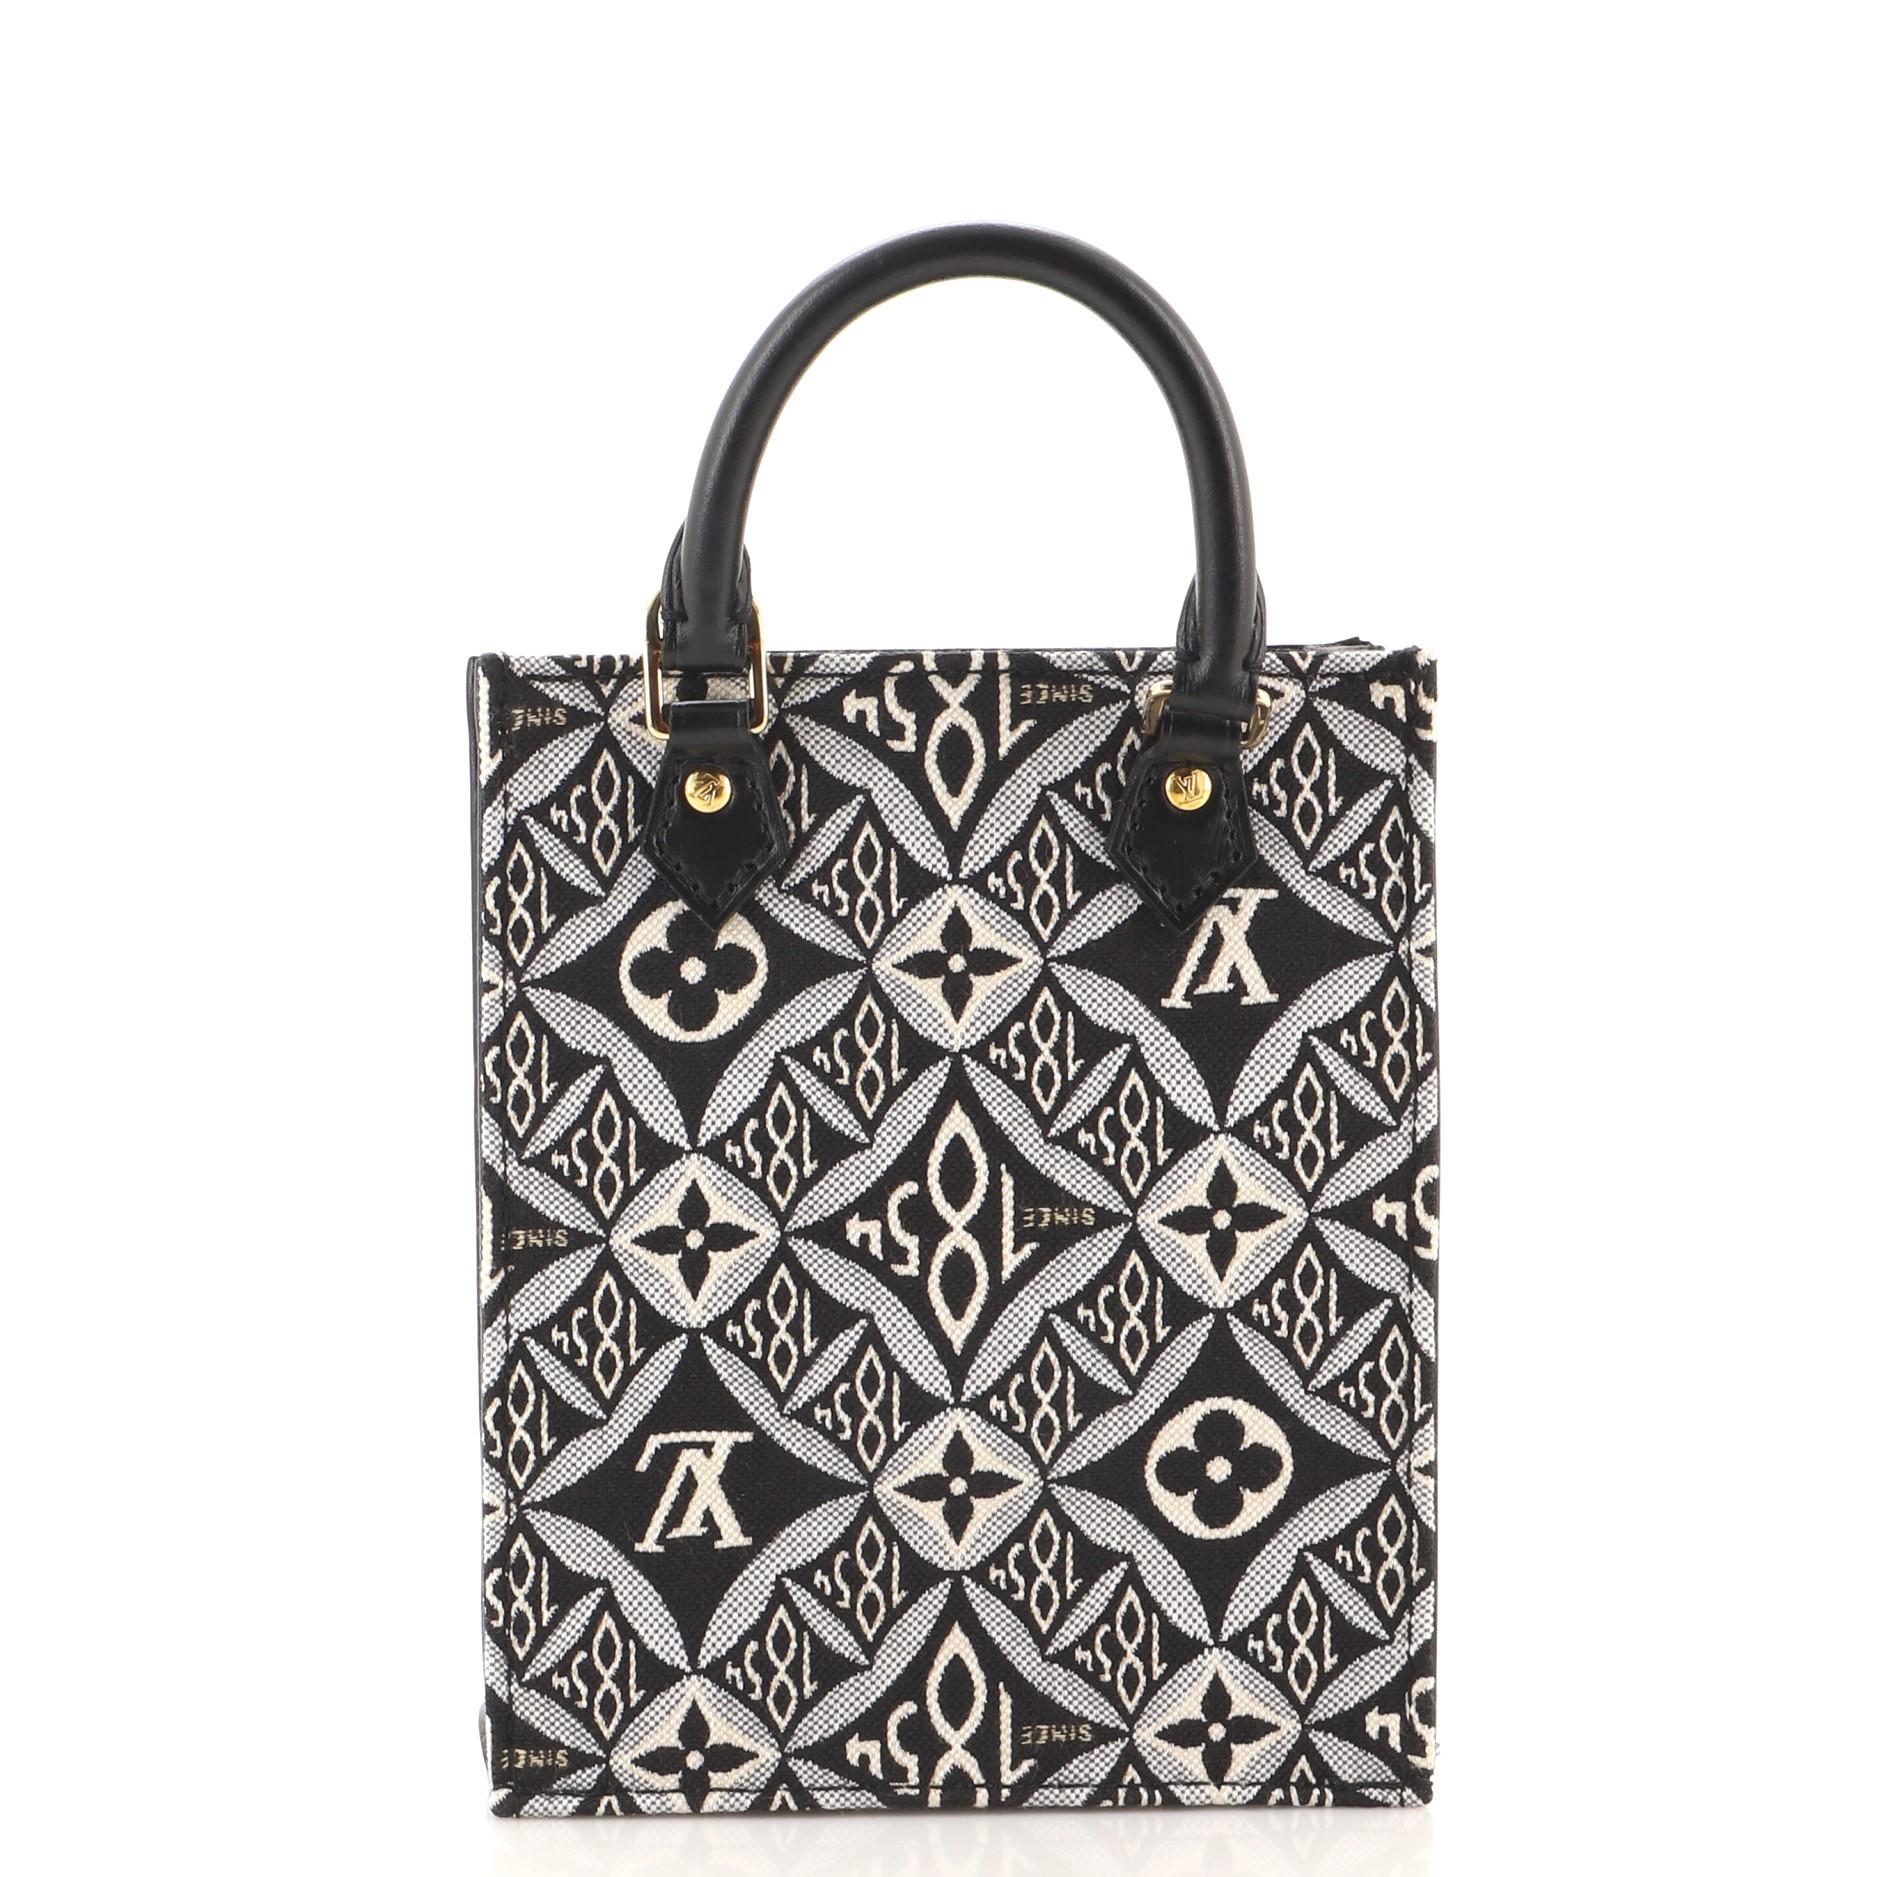 Black Louis Vuitton Petit Sac Plat Bag Limited Edition Since 1854 Monogram Jacquard